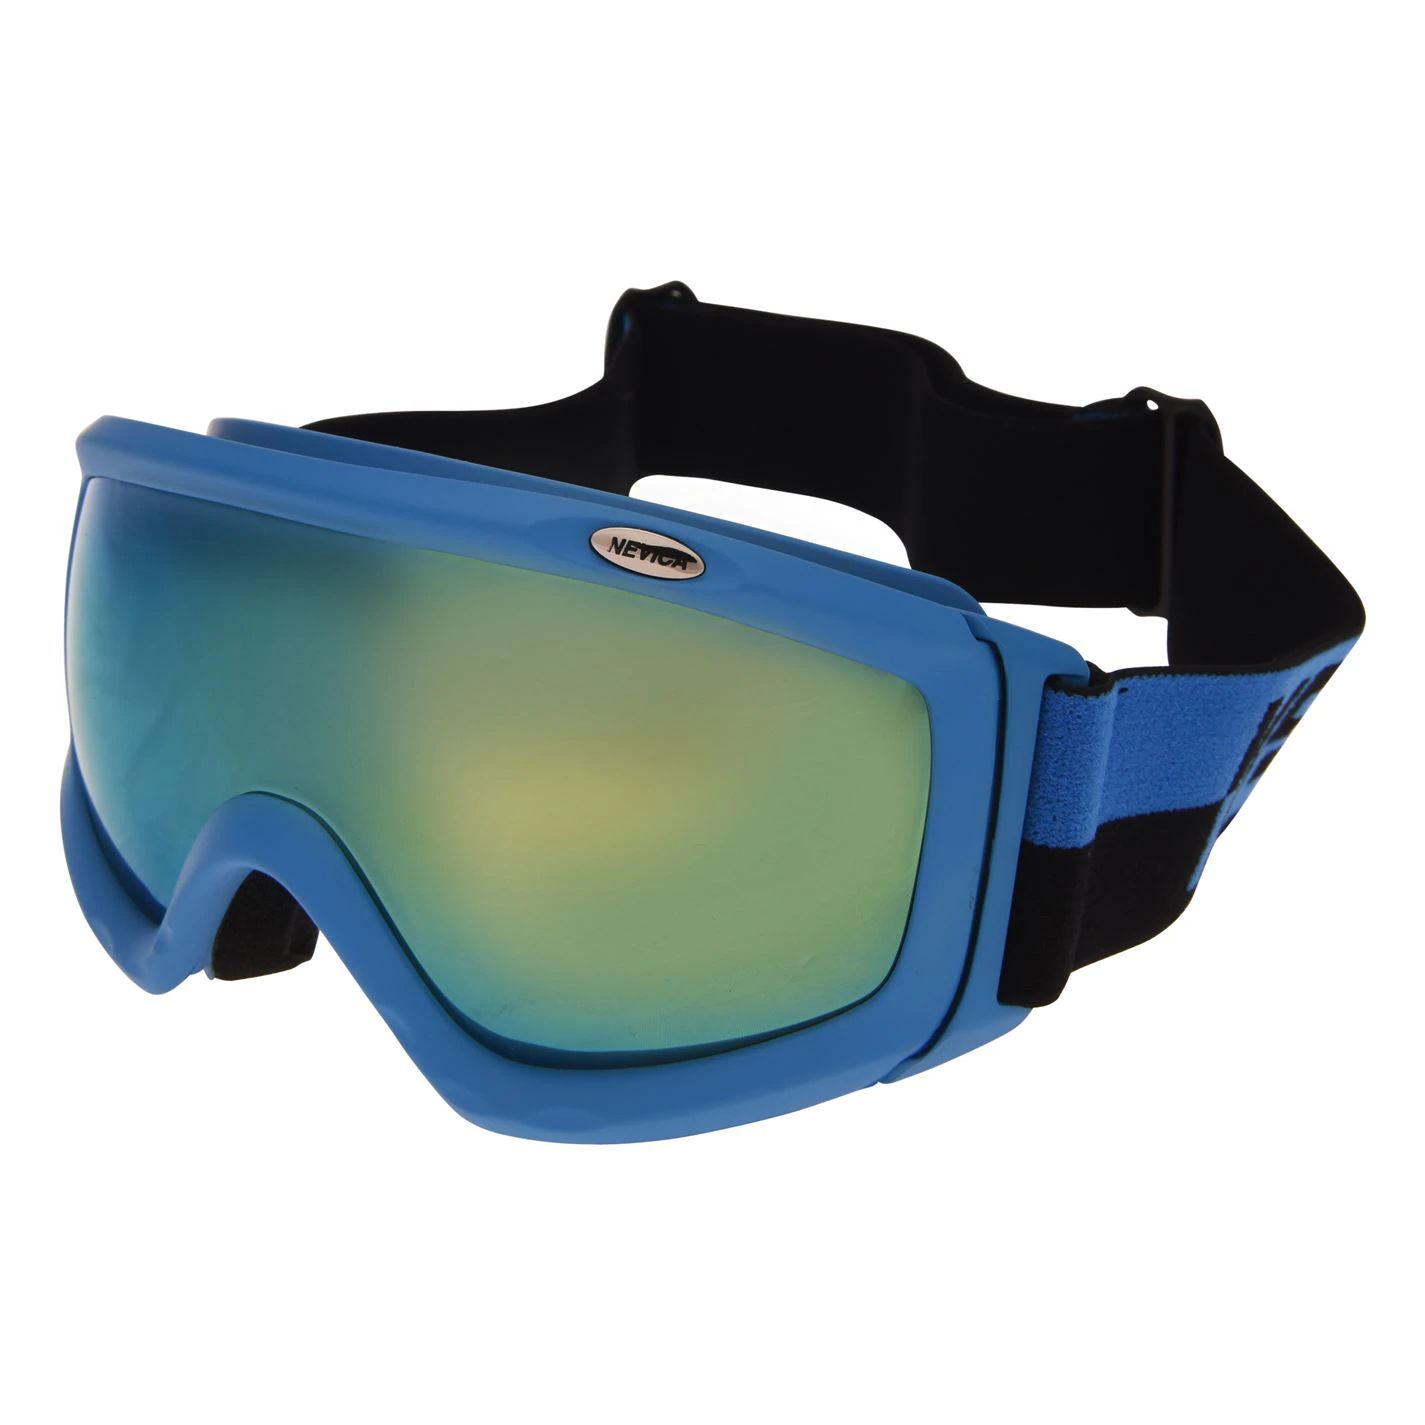 dětské lyžařské a snowboardové brýle NEVICA VAIL - BLUE